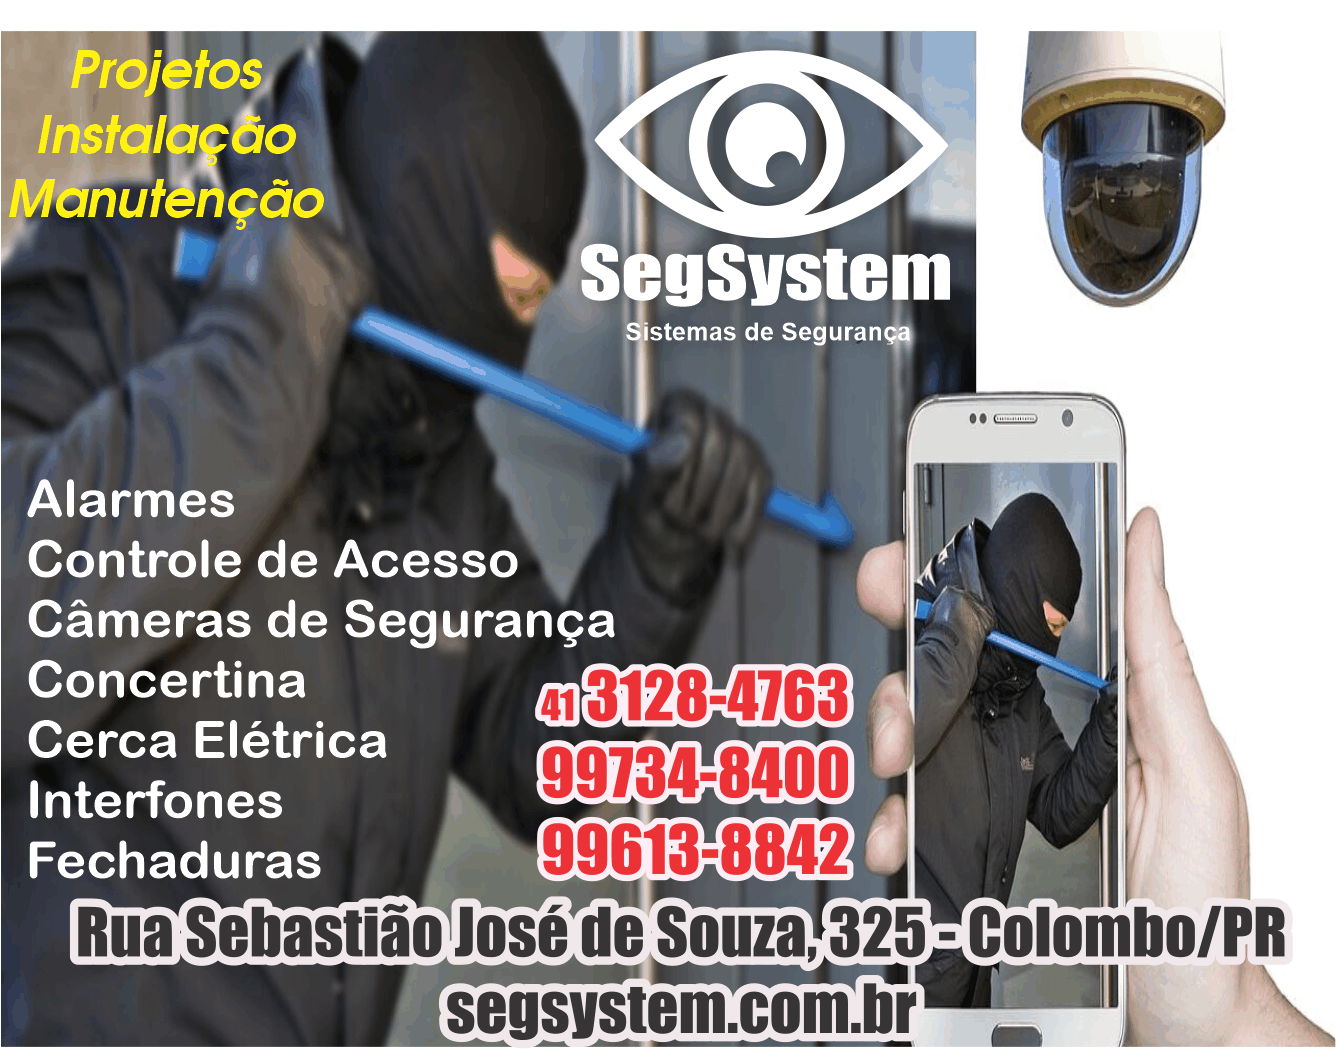 SegSystem Sistemas de Segurança      RUA PEDRO DO ROSÁRIO, 325, COLOMBO - PR  Fones: (41) 99734-8400 / (41) 99613-8842